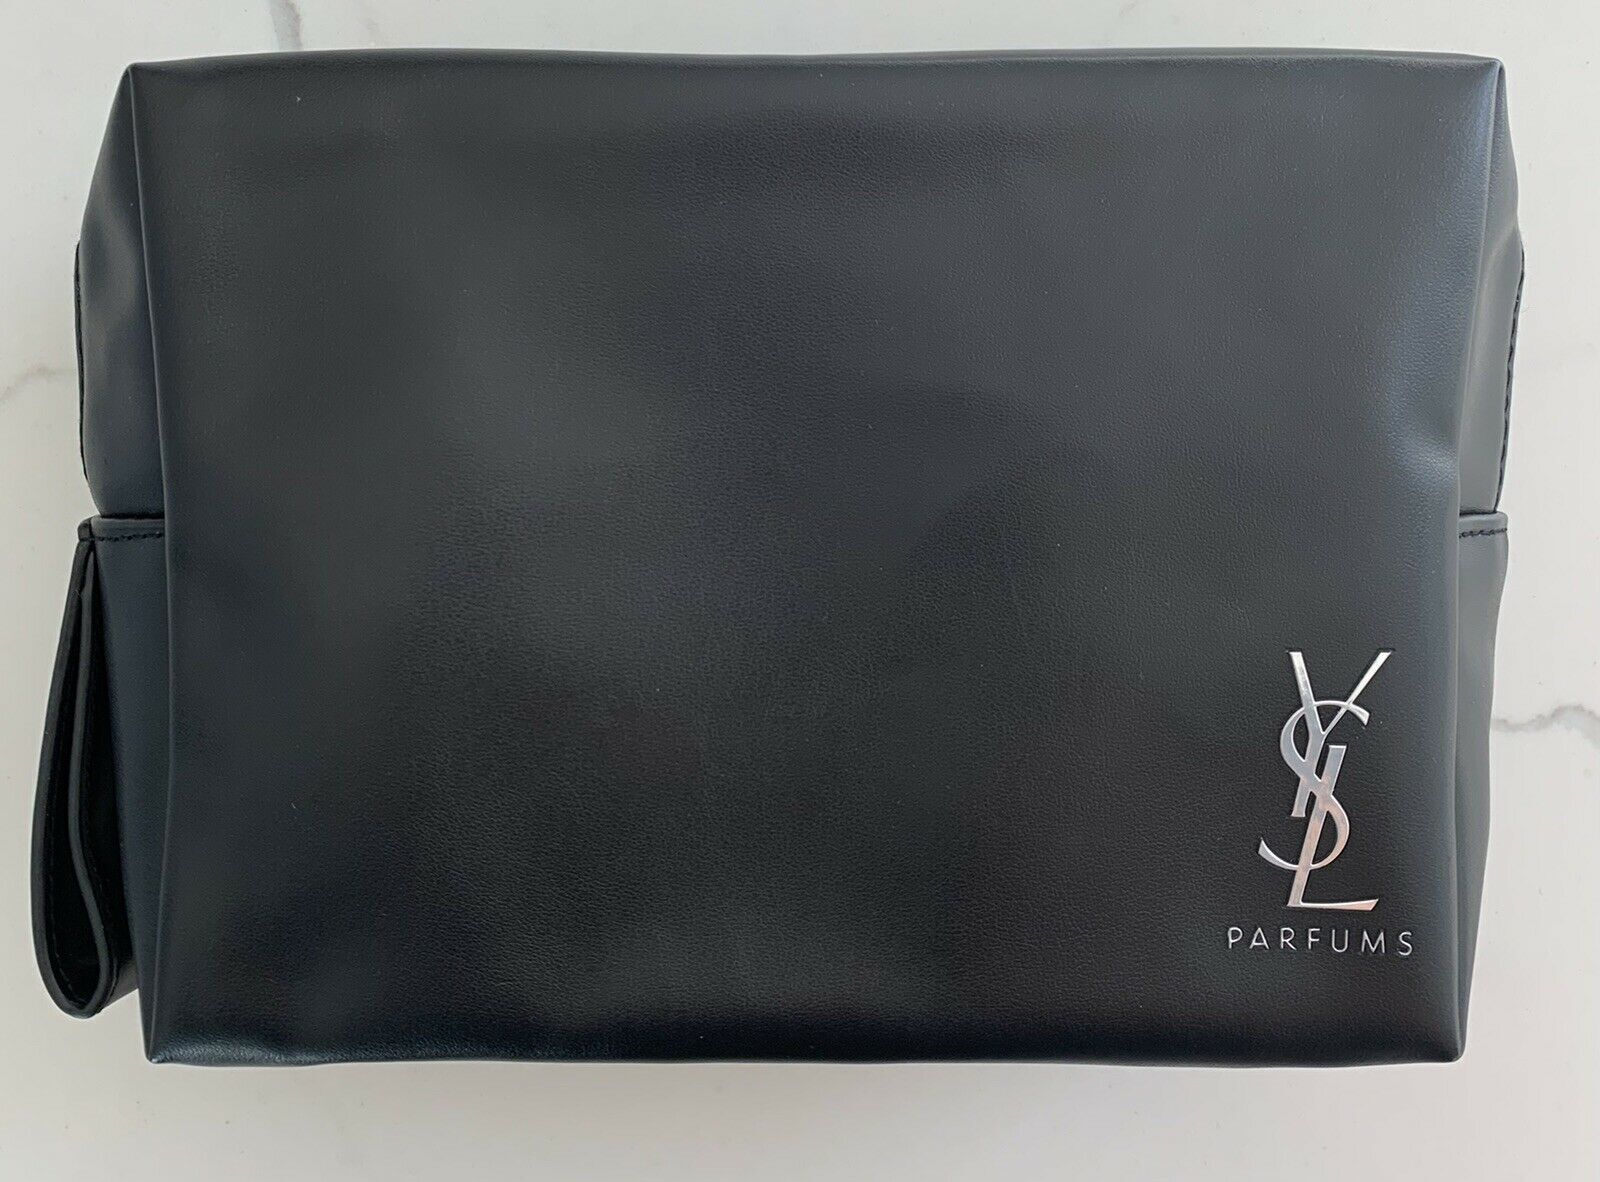 YSL YVES SAINT LAURENT Parfums black faux leather pouch toiletry bag dopp case